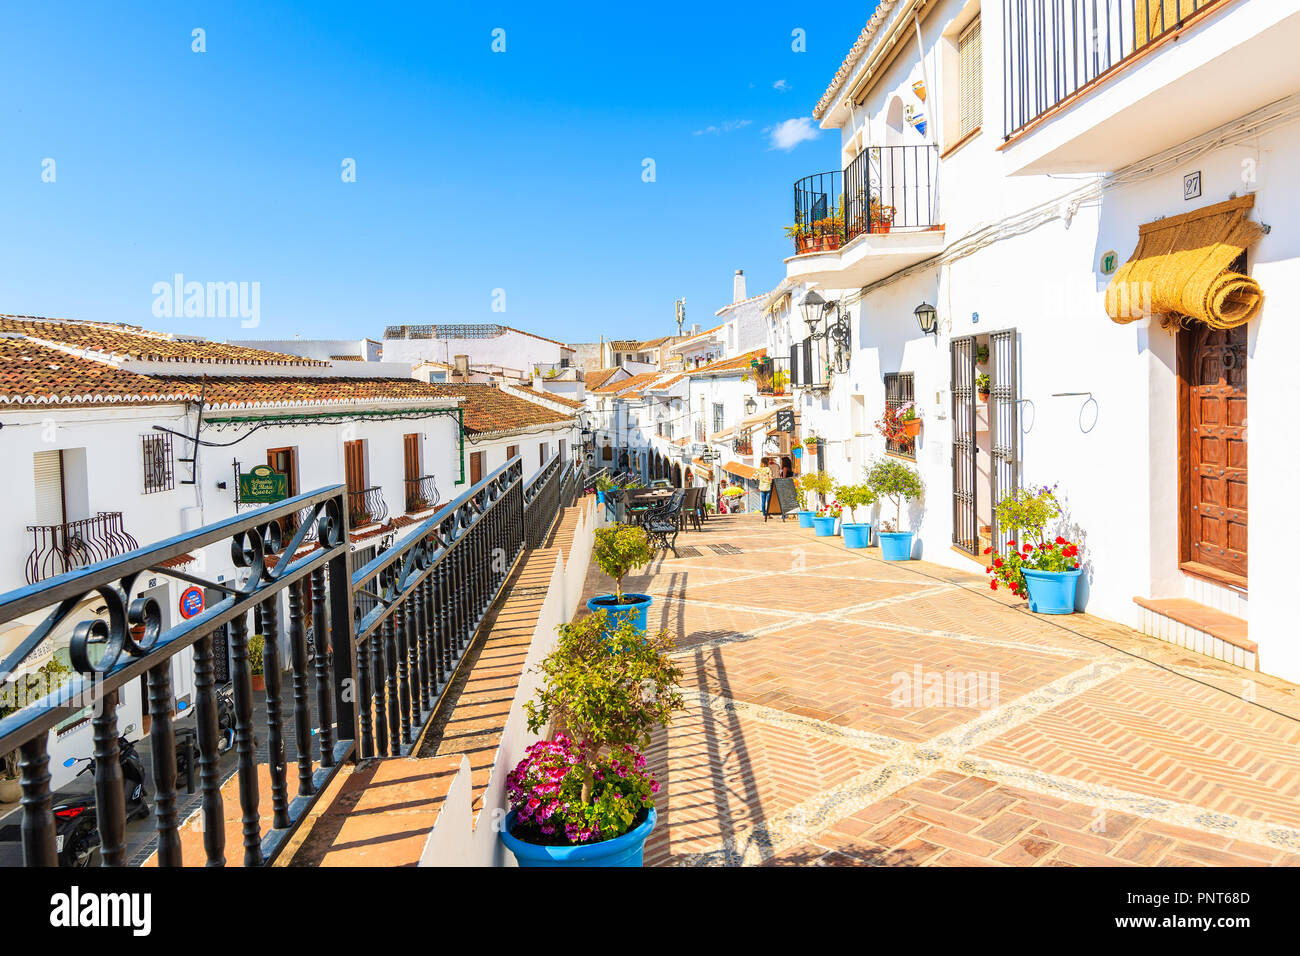 Stadt Mijas, Spanien - 9. Mai 2018: Straße mit Restaurants und Bars im malerischen Dorf Mijas, Andalusien. Spanien ist die zweite, die am meisten von Touristen besucht. Stockfoto